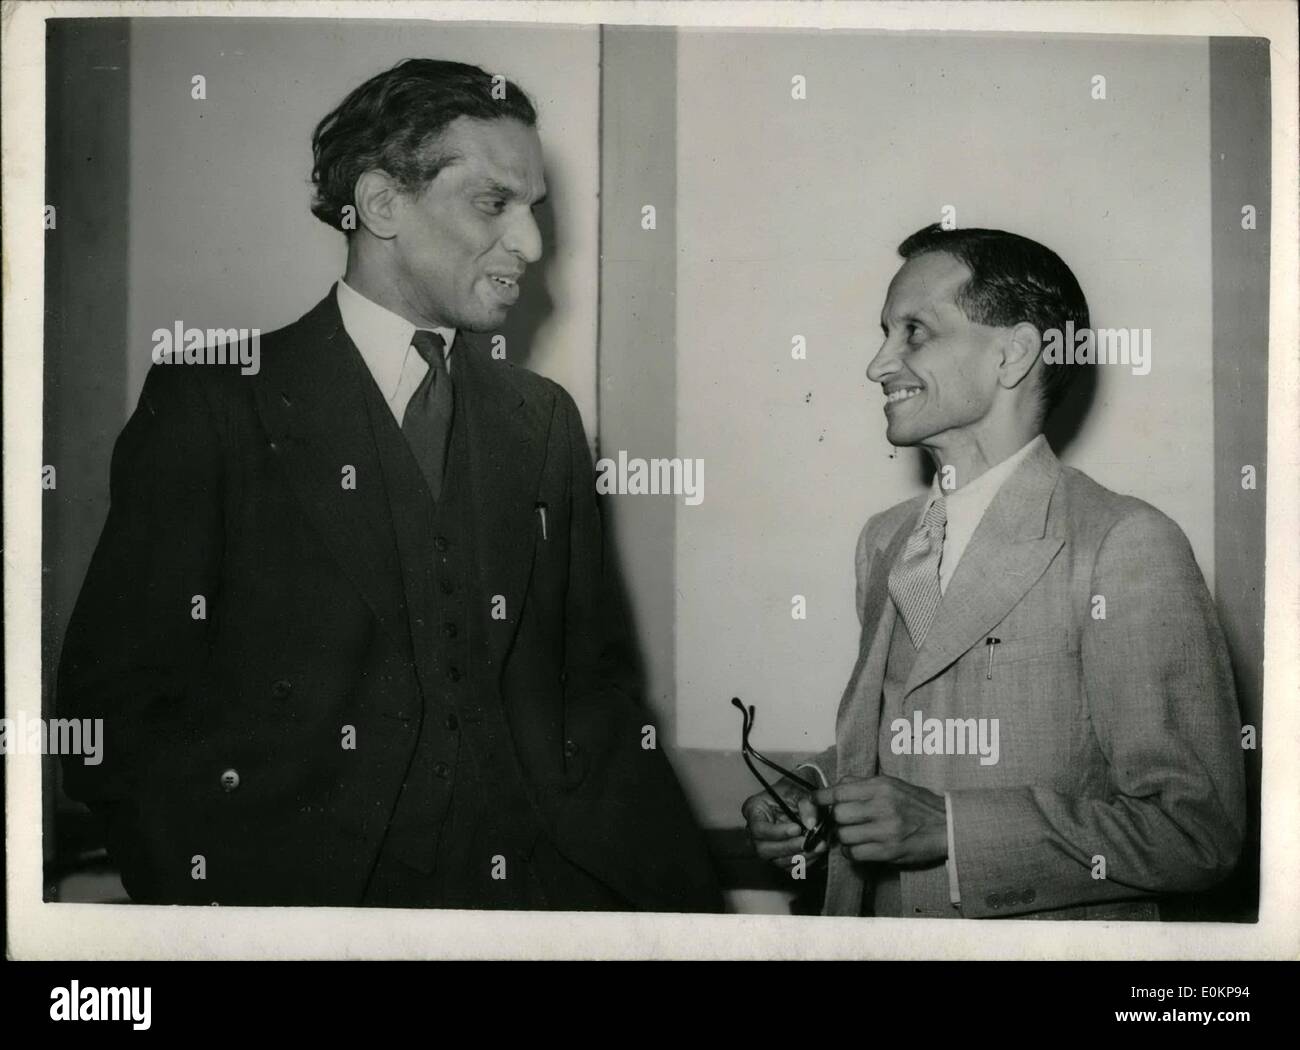 31 maggio 1944 - 31-5-44 Presidente di All-India T.U.C. a Londra. Keystone Foto Mostra: S.A. Dange (a destra) il presidente dell'All-India T.U.C. Fotografato nel corso di una conferenza stampa tenutasi a Londra. con lui è V.K. Krishna Menon. Il segretario generale dell'India League (sinistra) Foto Stock